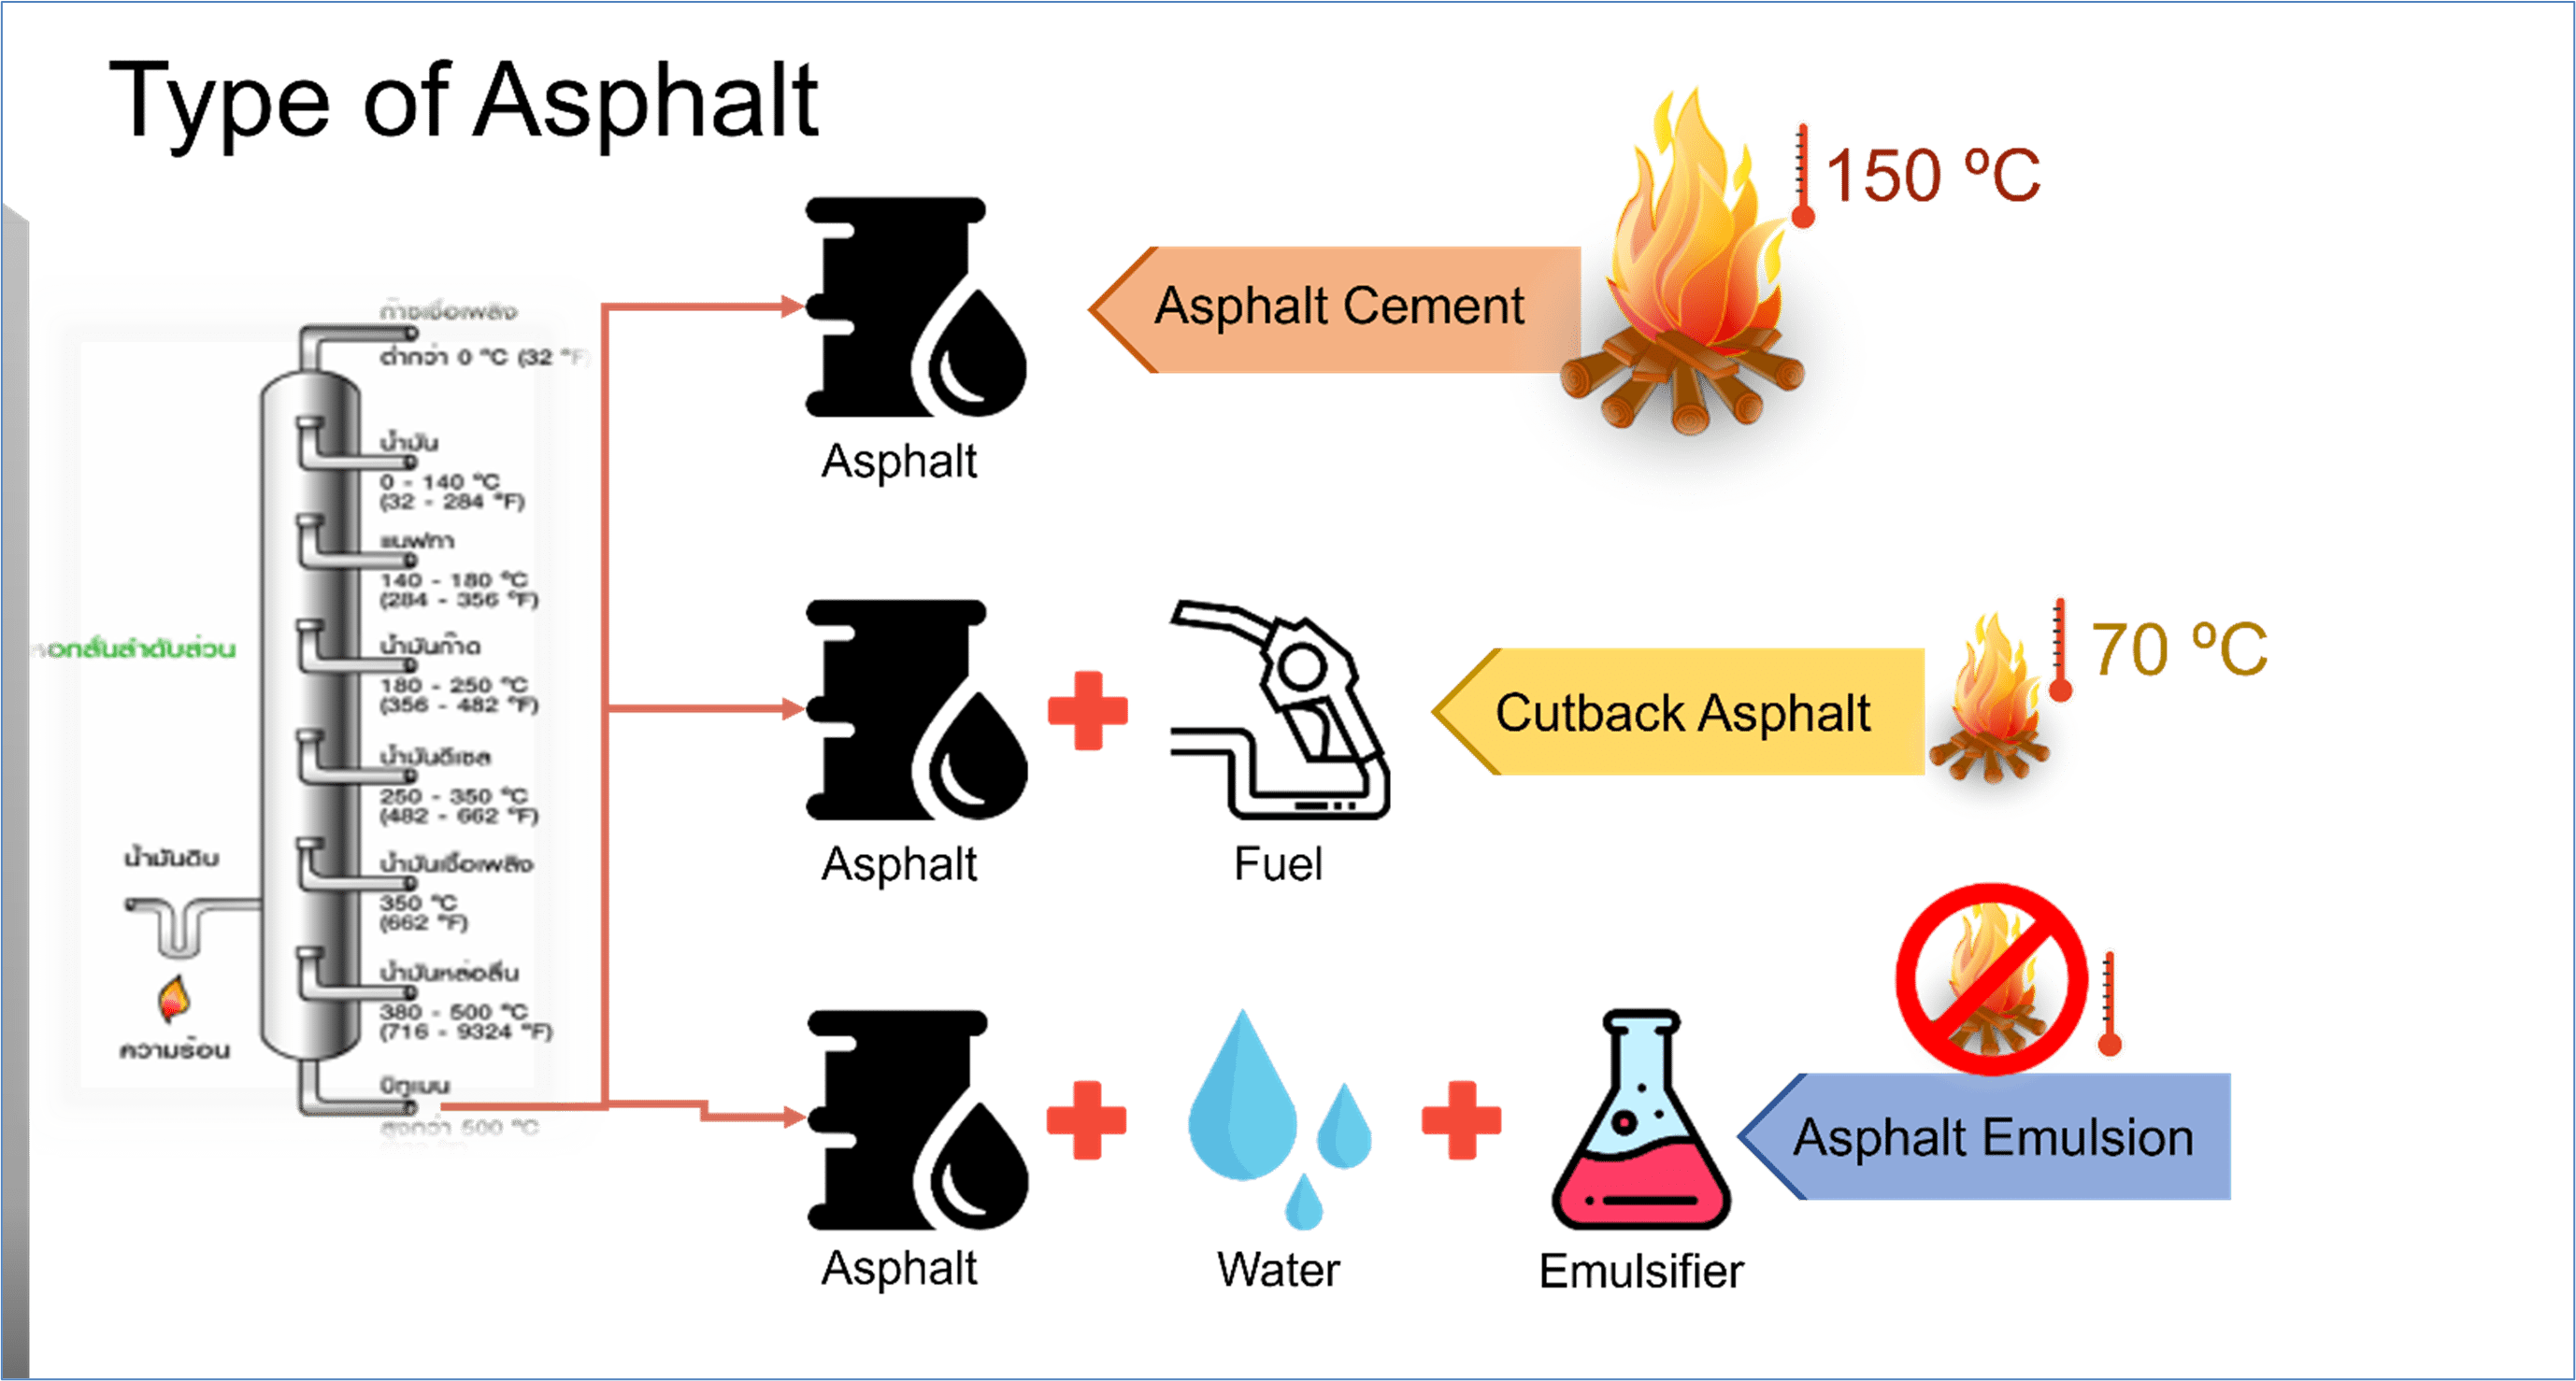 ประเภทของยางมะตอย (Type of Asphalt)